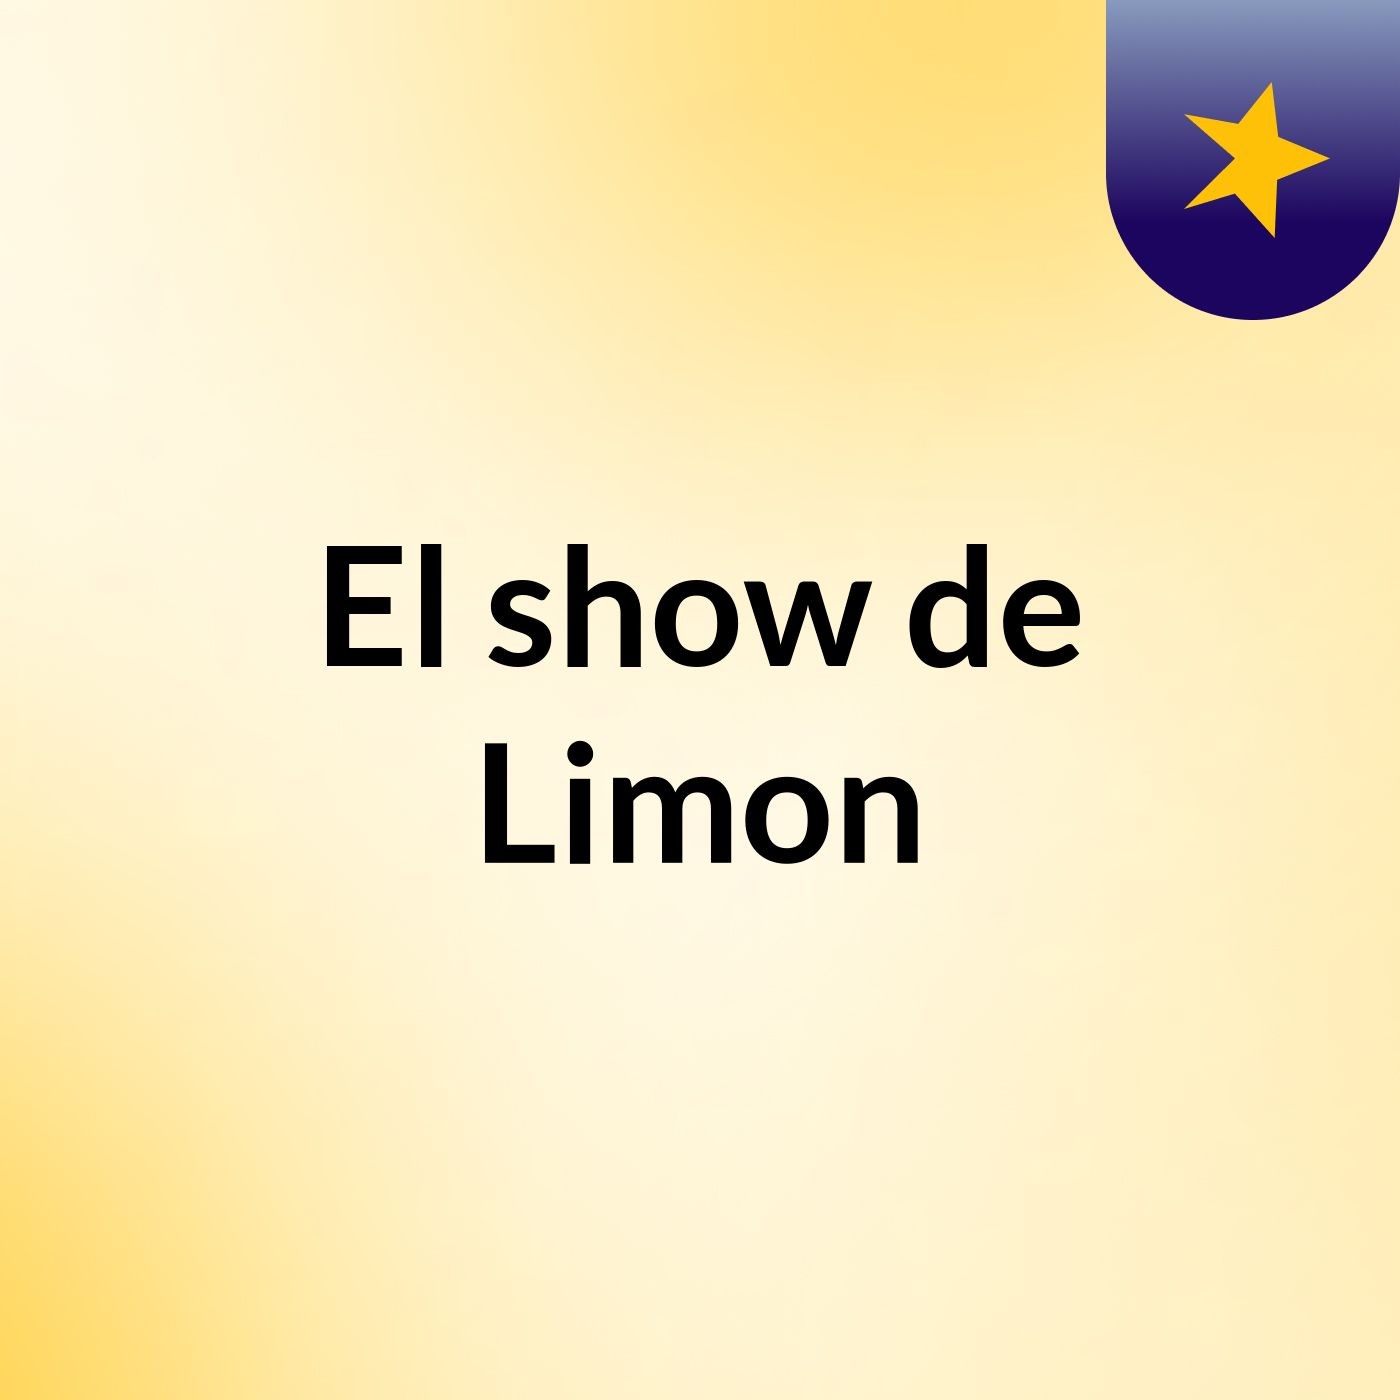 El show de Limon